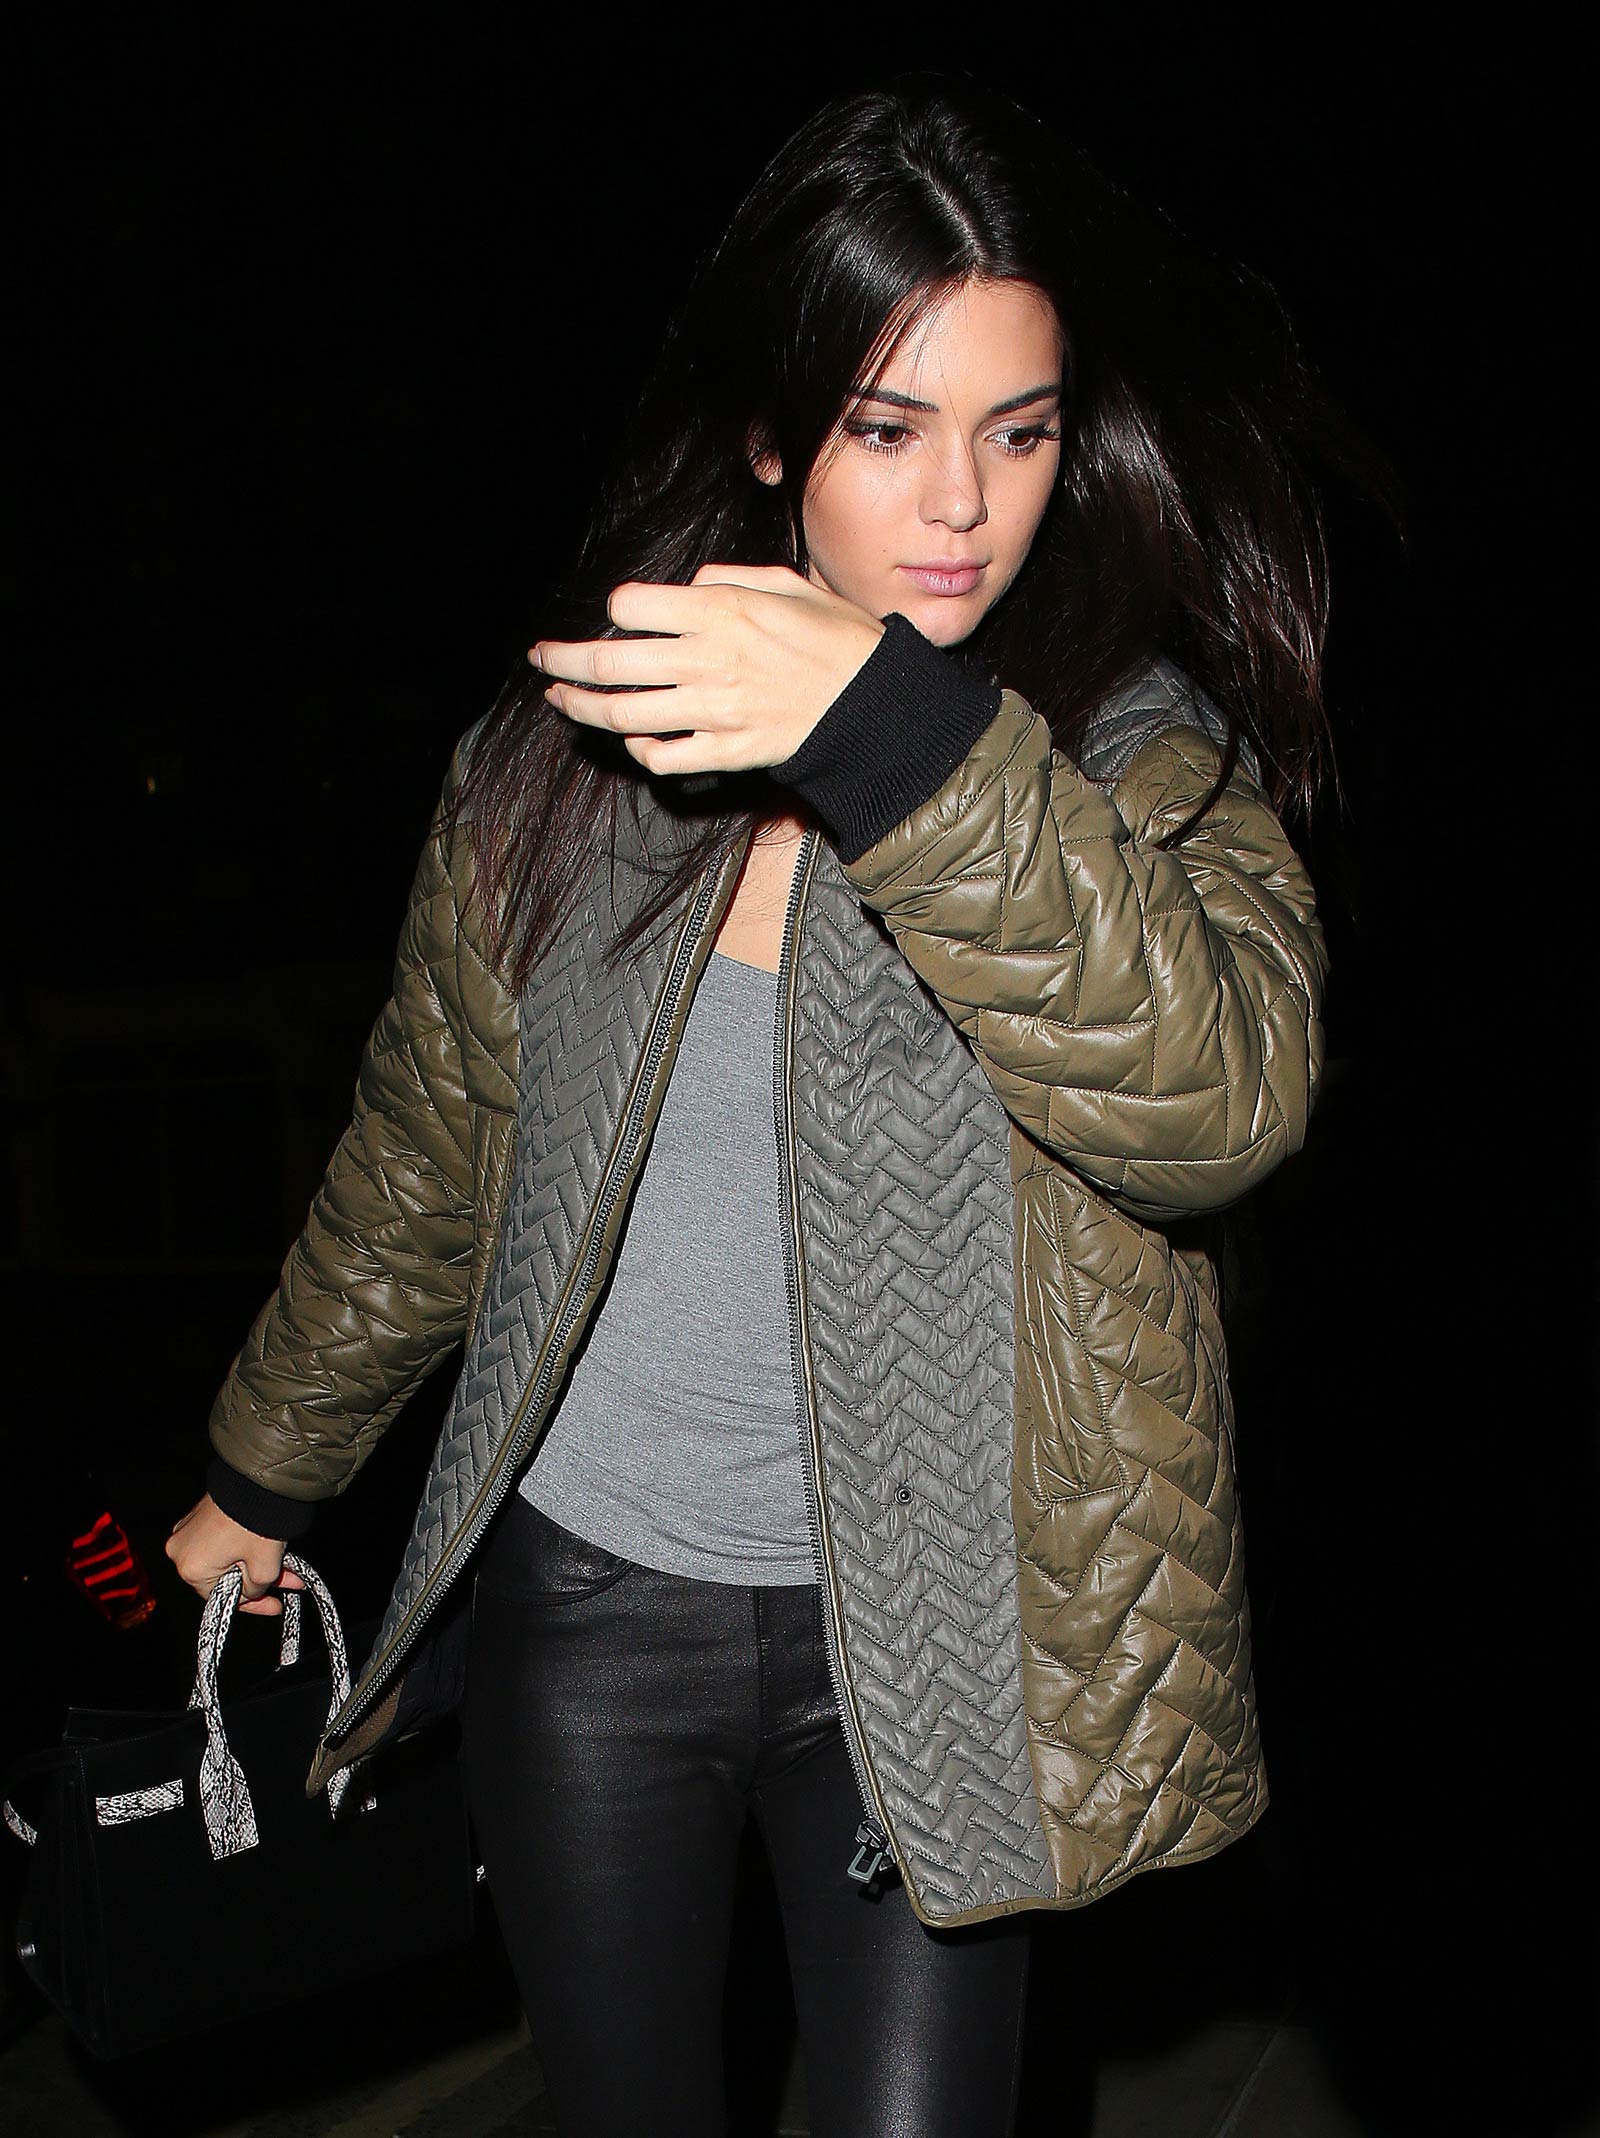 Kendall Jenner arrives back at her hotel